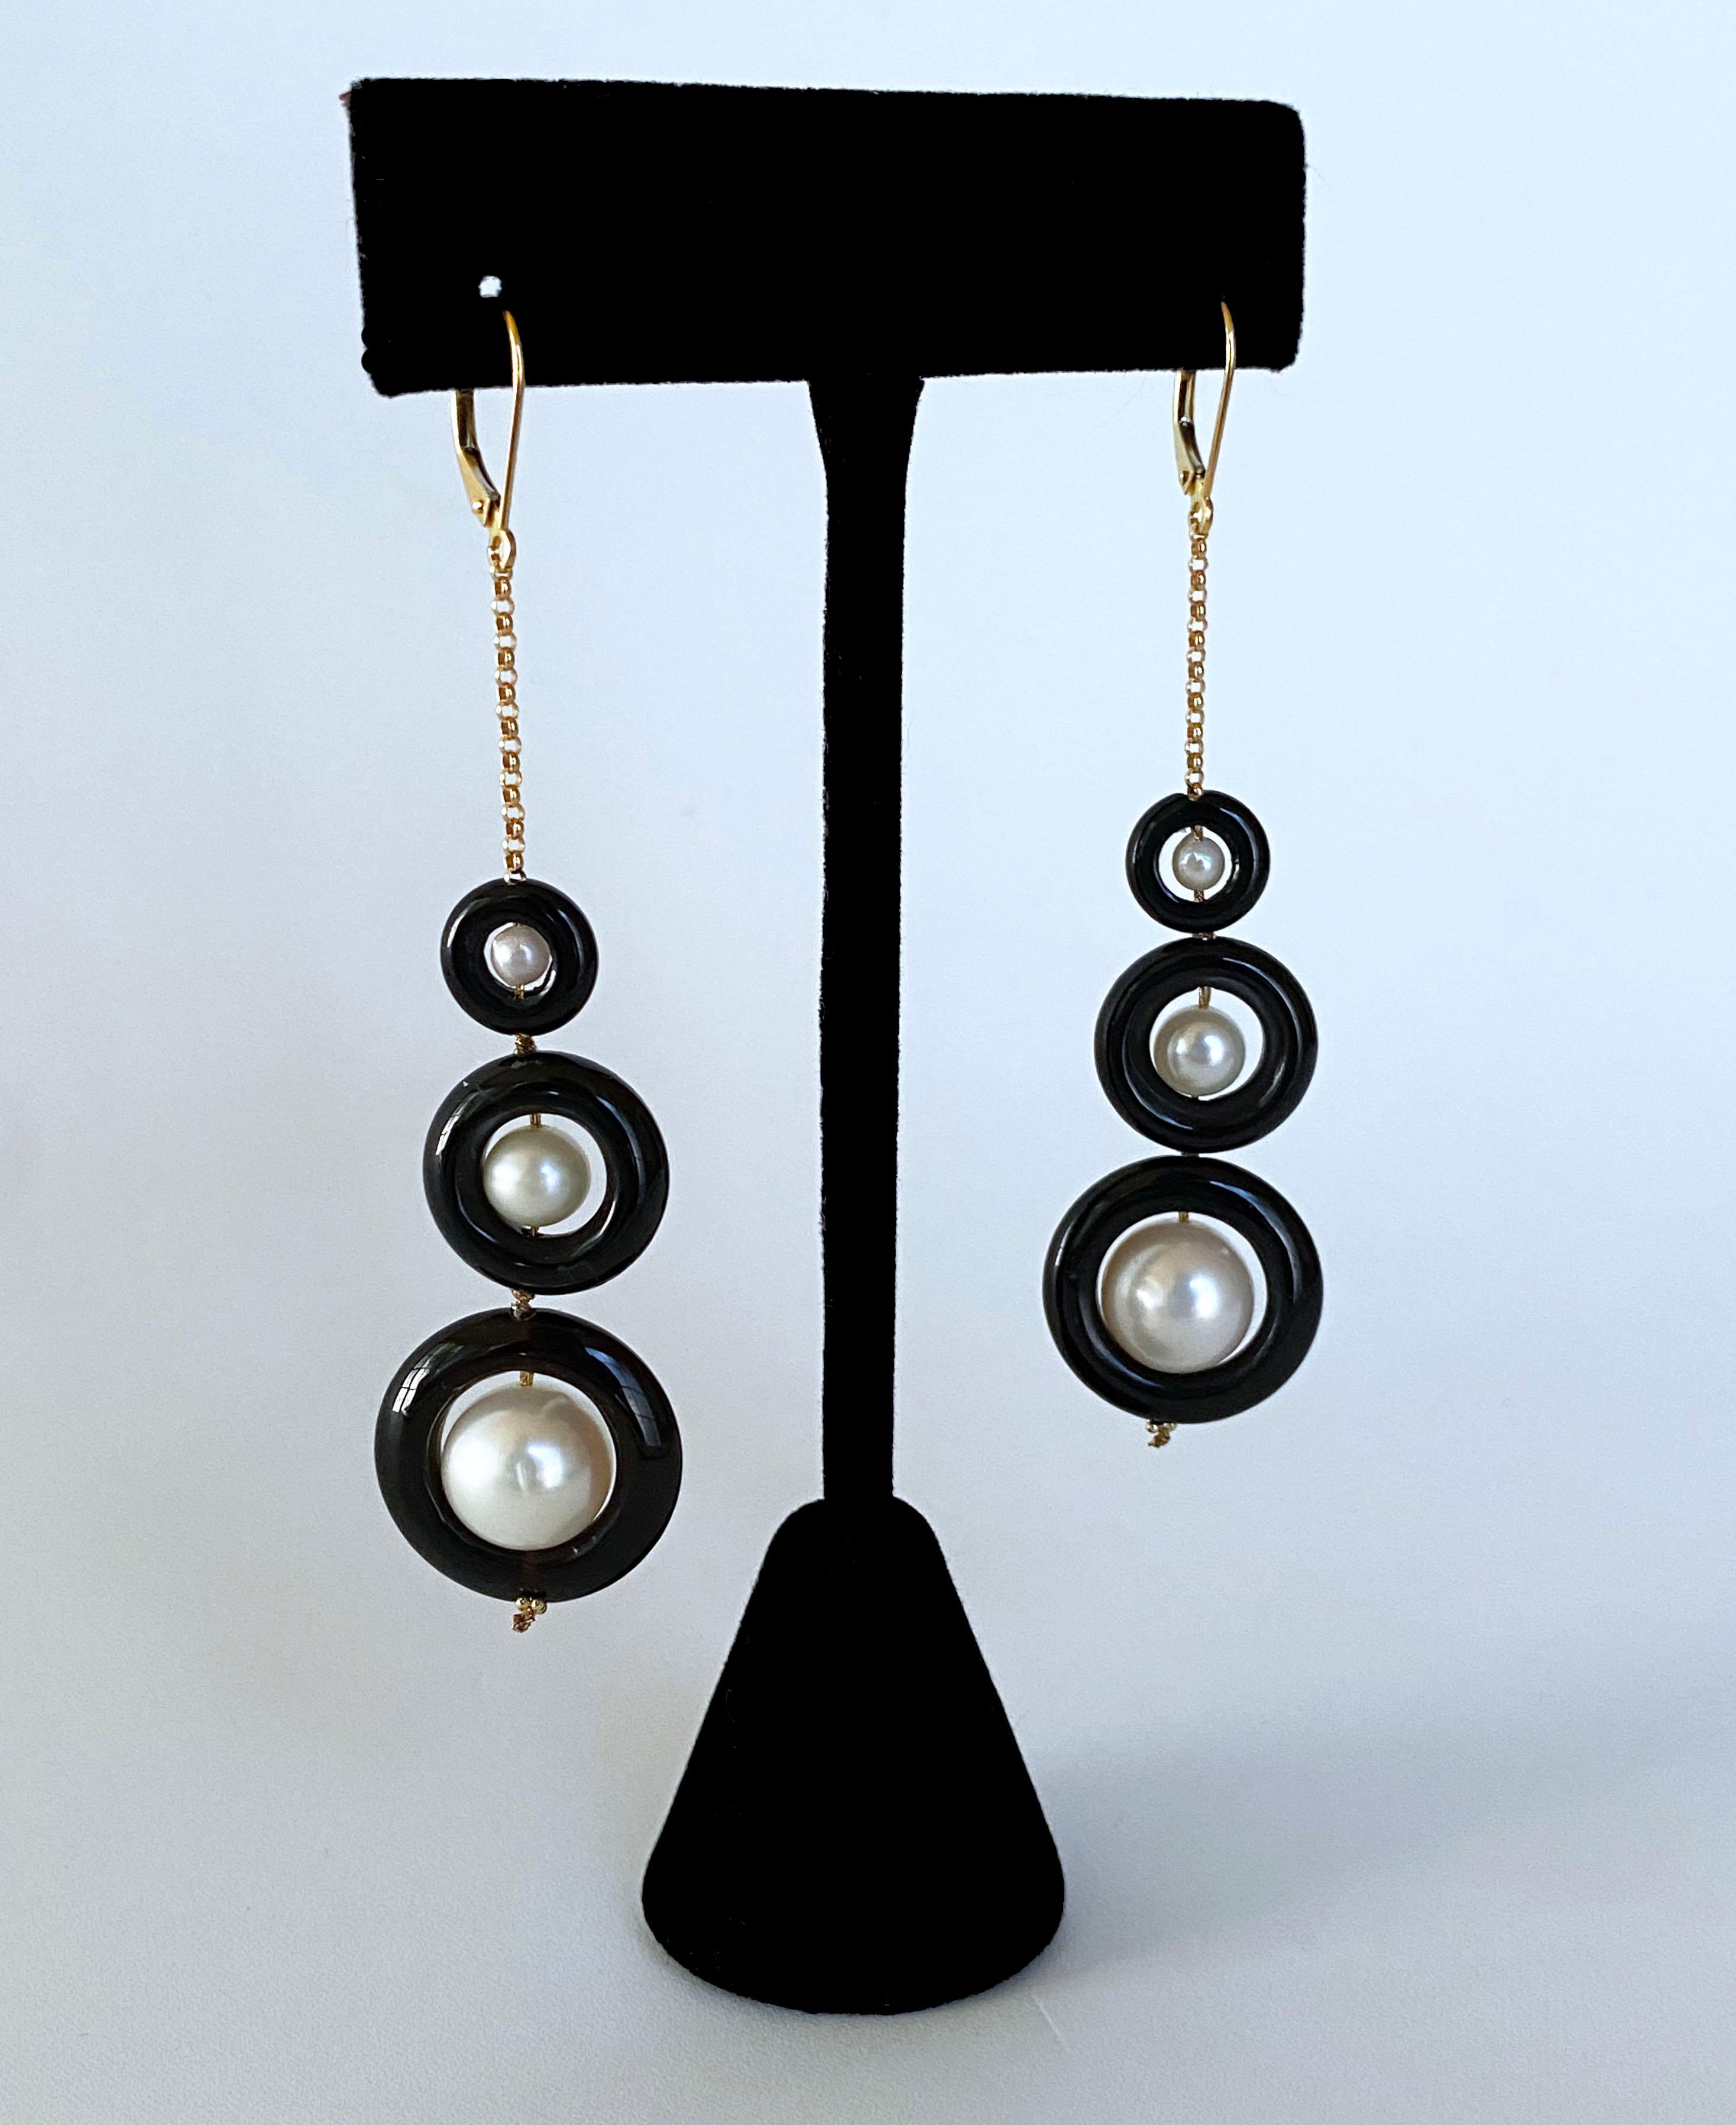 Atemberaubendes Paar Ohrringe von Marina J. Dieses Paar besteht aus runden weißen Perlen mit einem sanft schillernden Glanz, die in runden schwarzen Onyx-Donuts sitzen. Die Perlen und der schwarze Onyx sind in der Größe abgestuft und ergeben einen